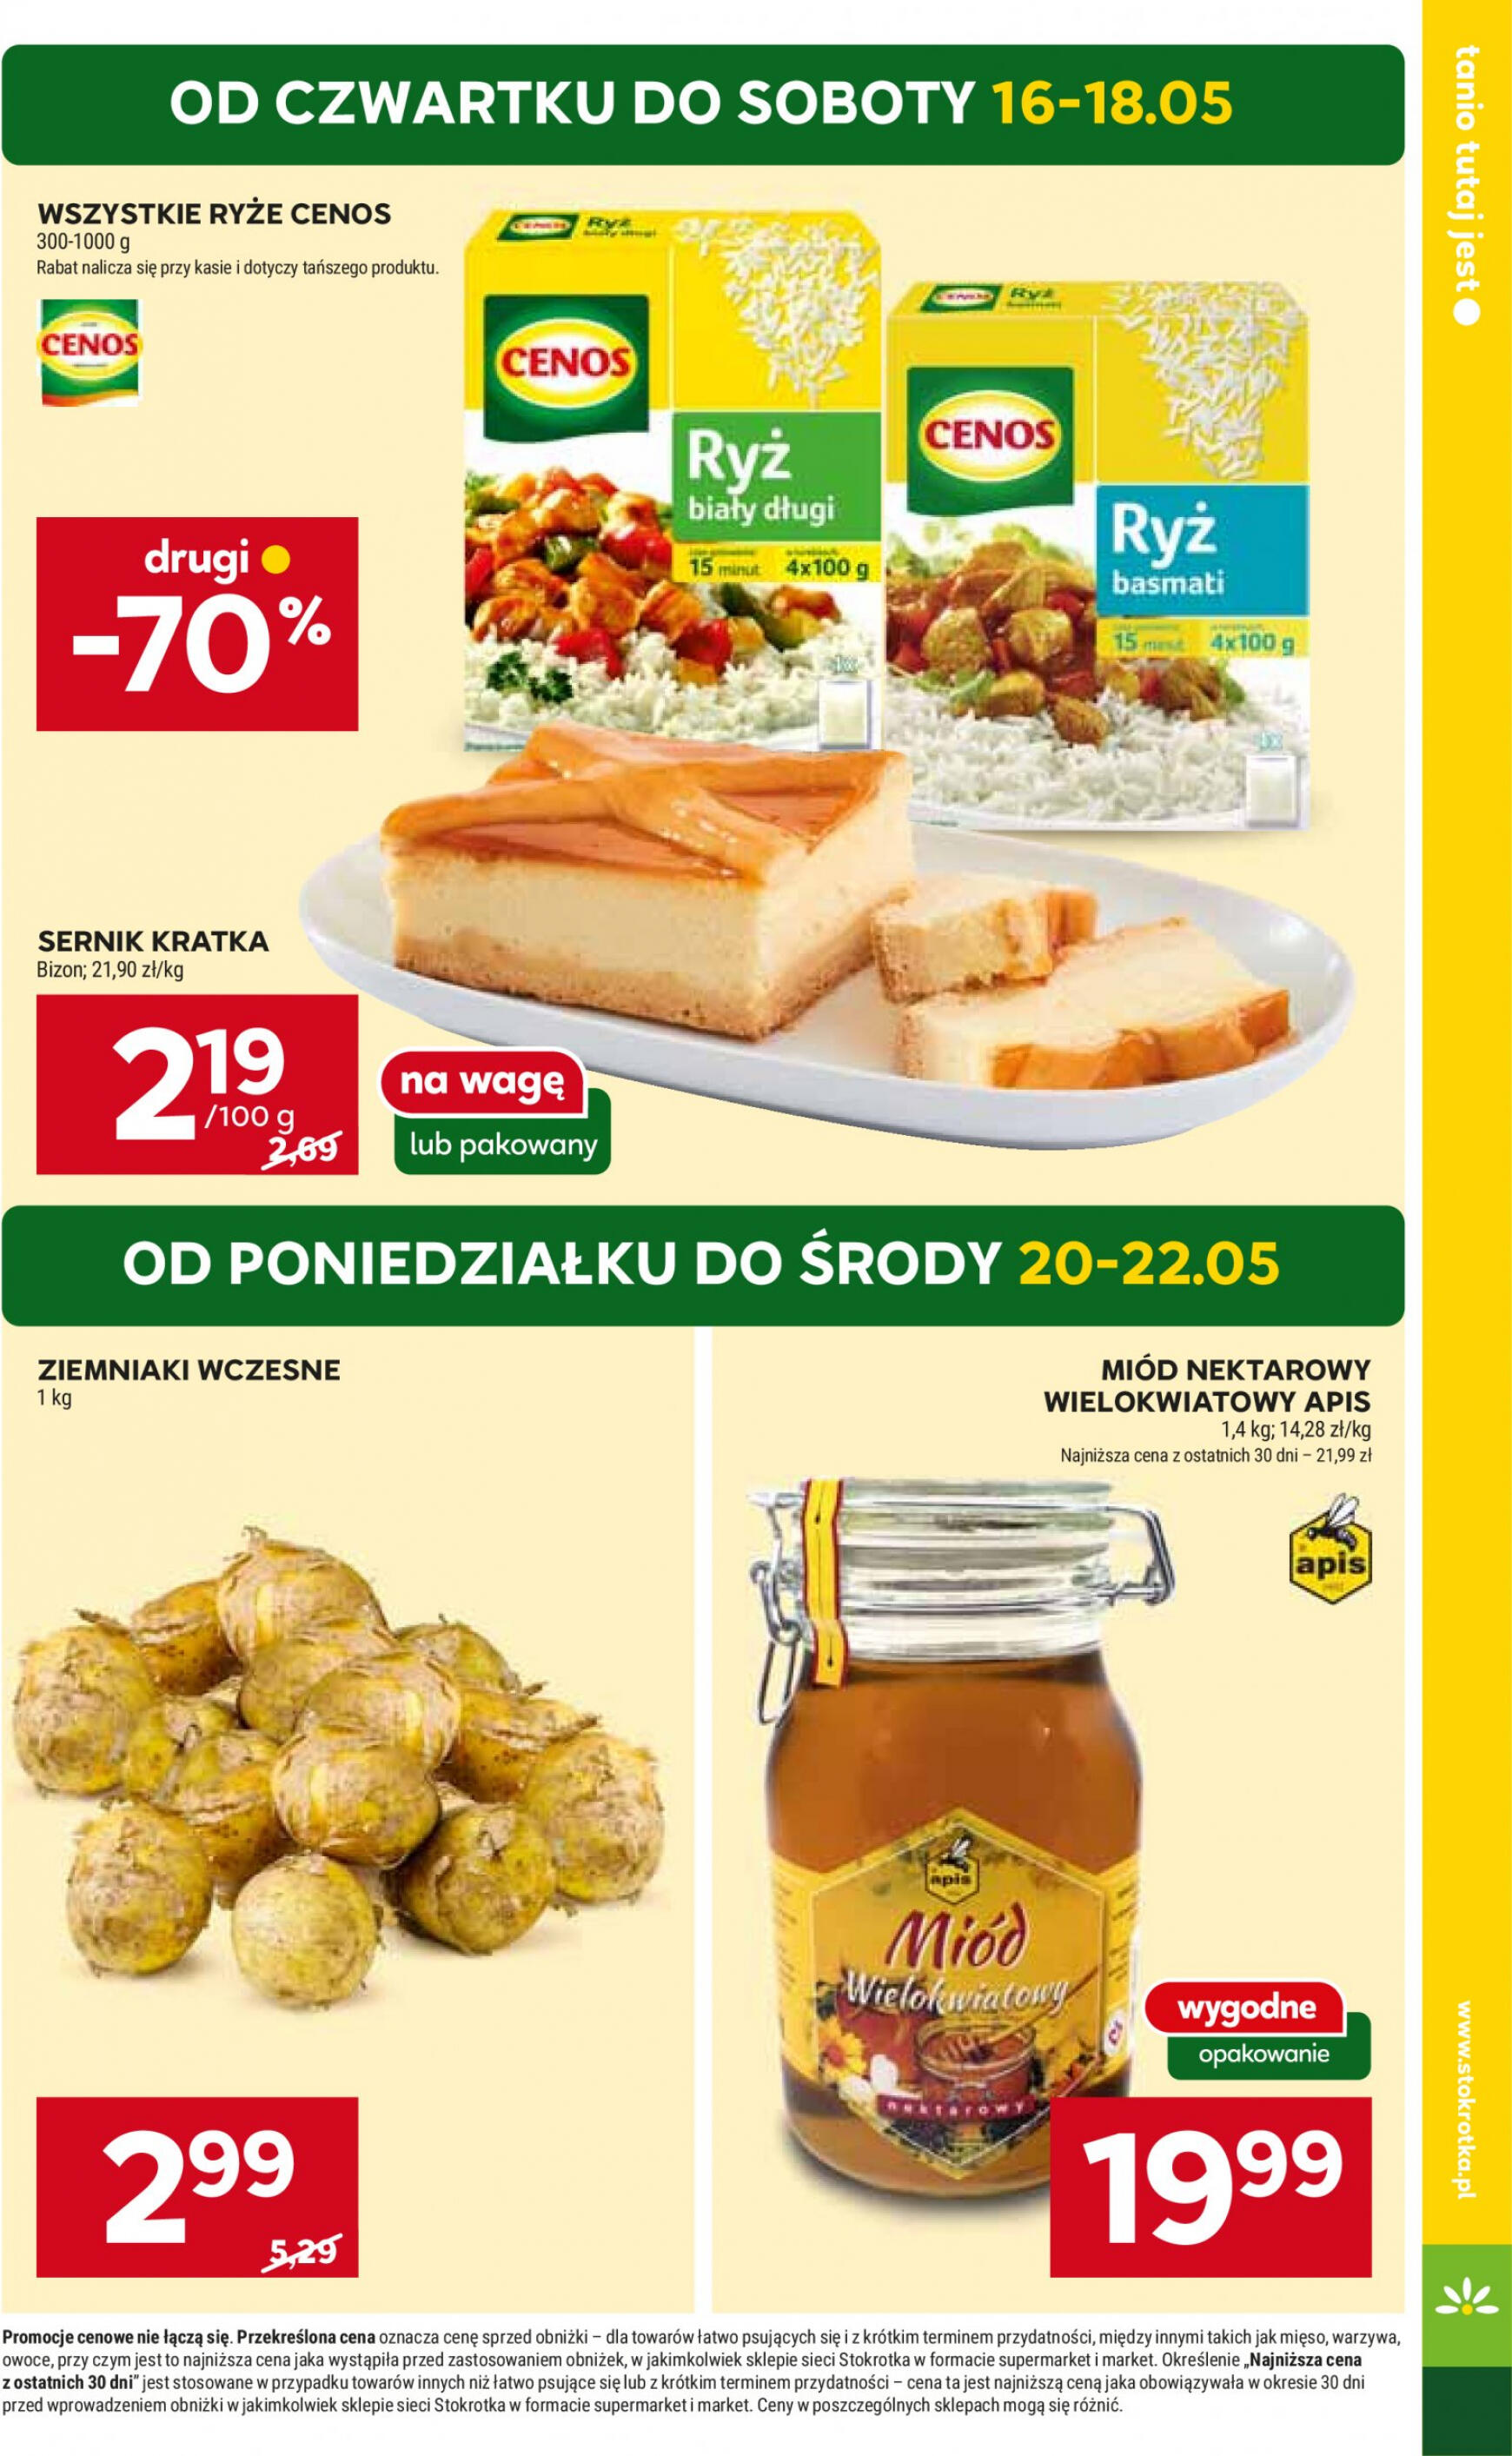 stokrotka - Stokrotka - Supermarket gazetka aktualna ważna od 16.05. - 22.05. - page: 5